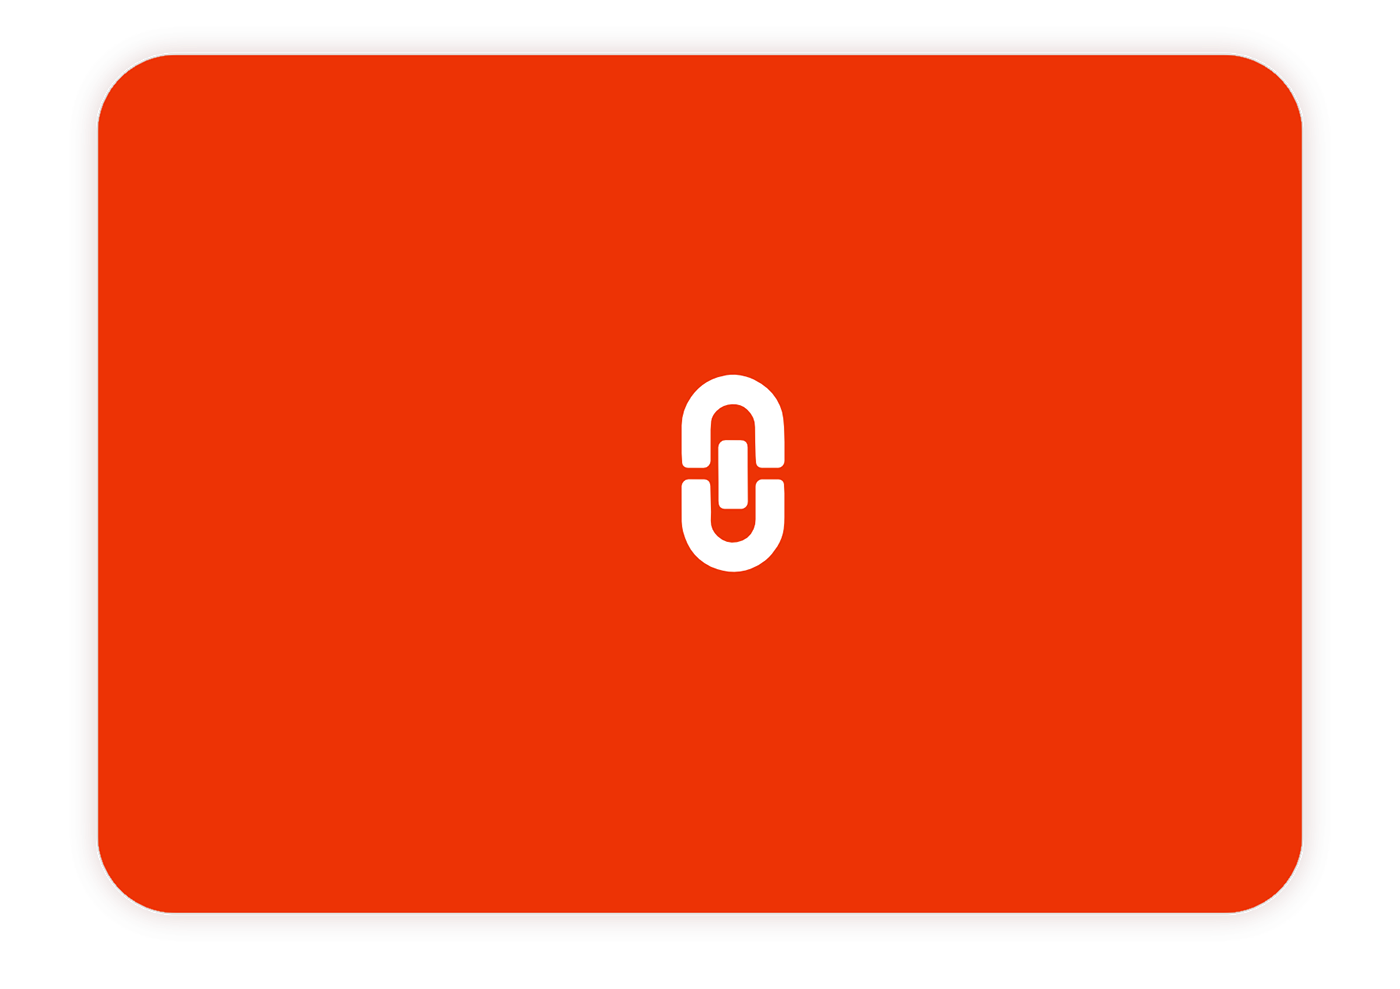 SAAS Proposal software writing  brand logo minimal red